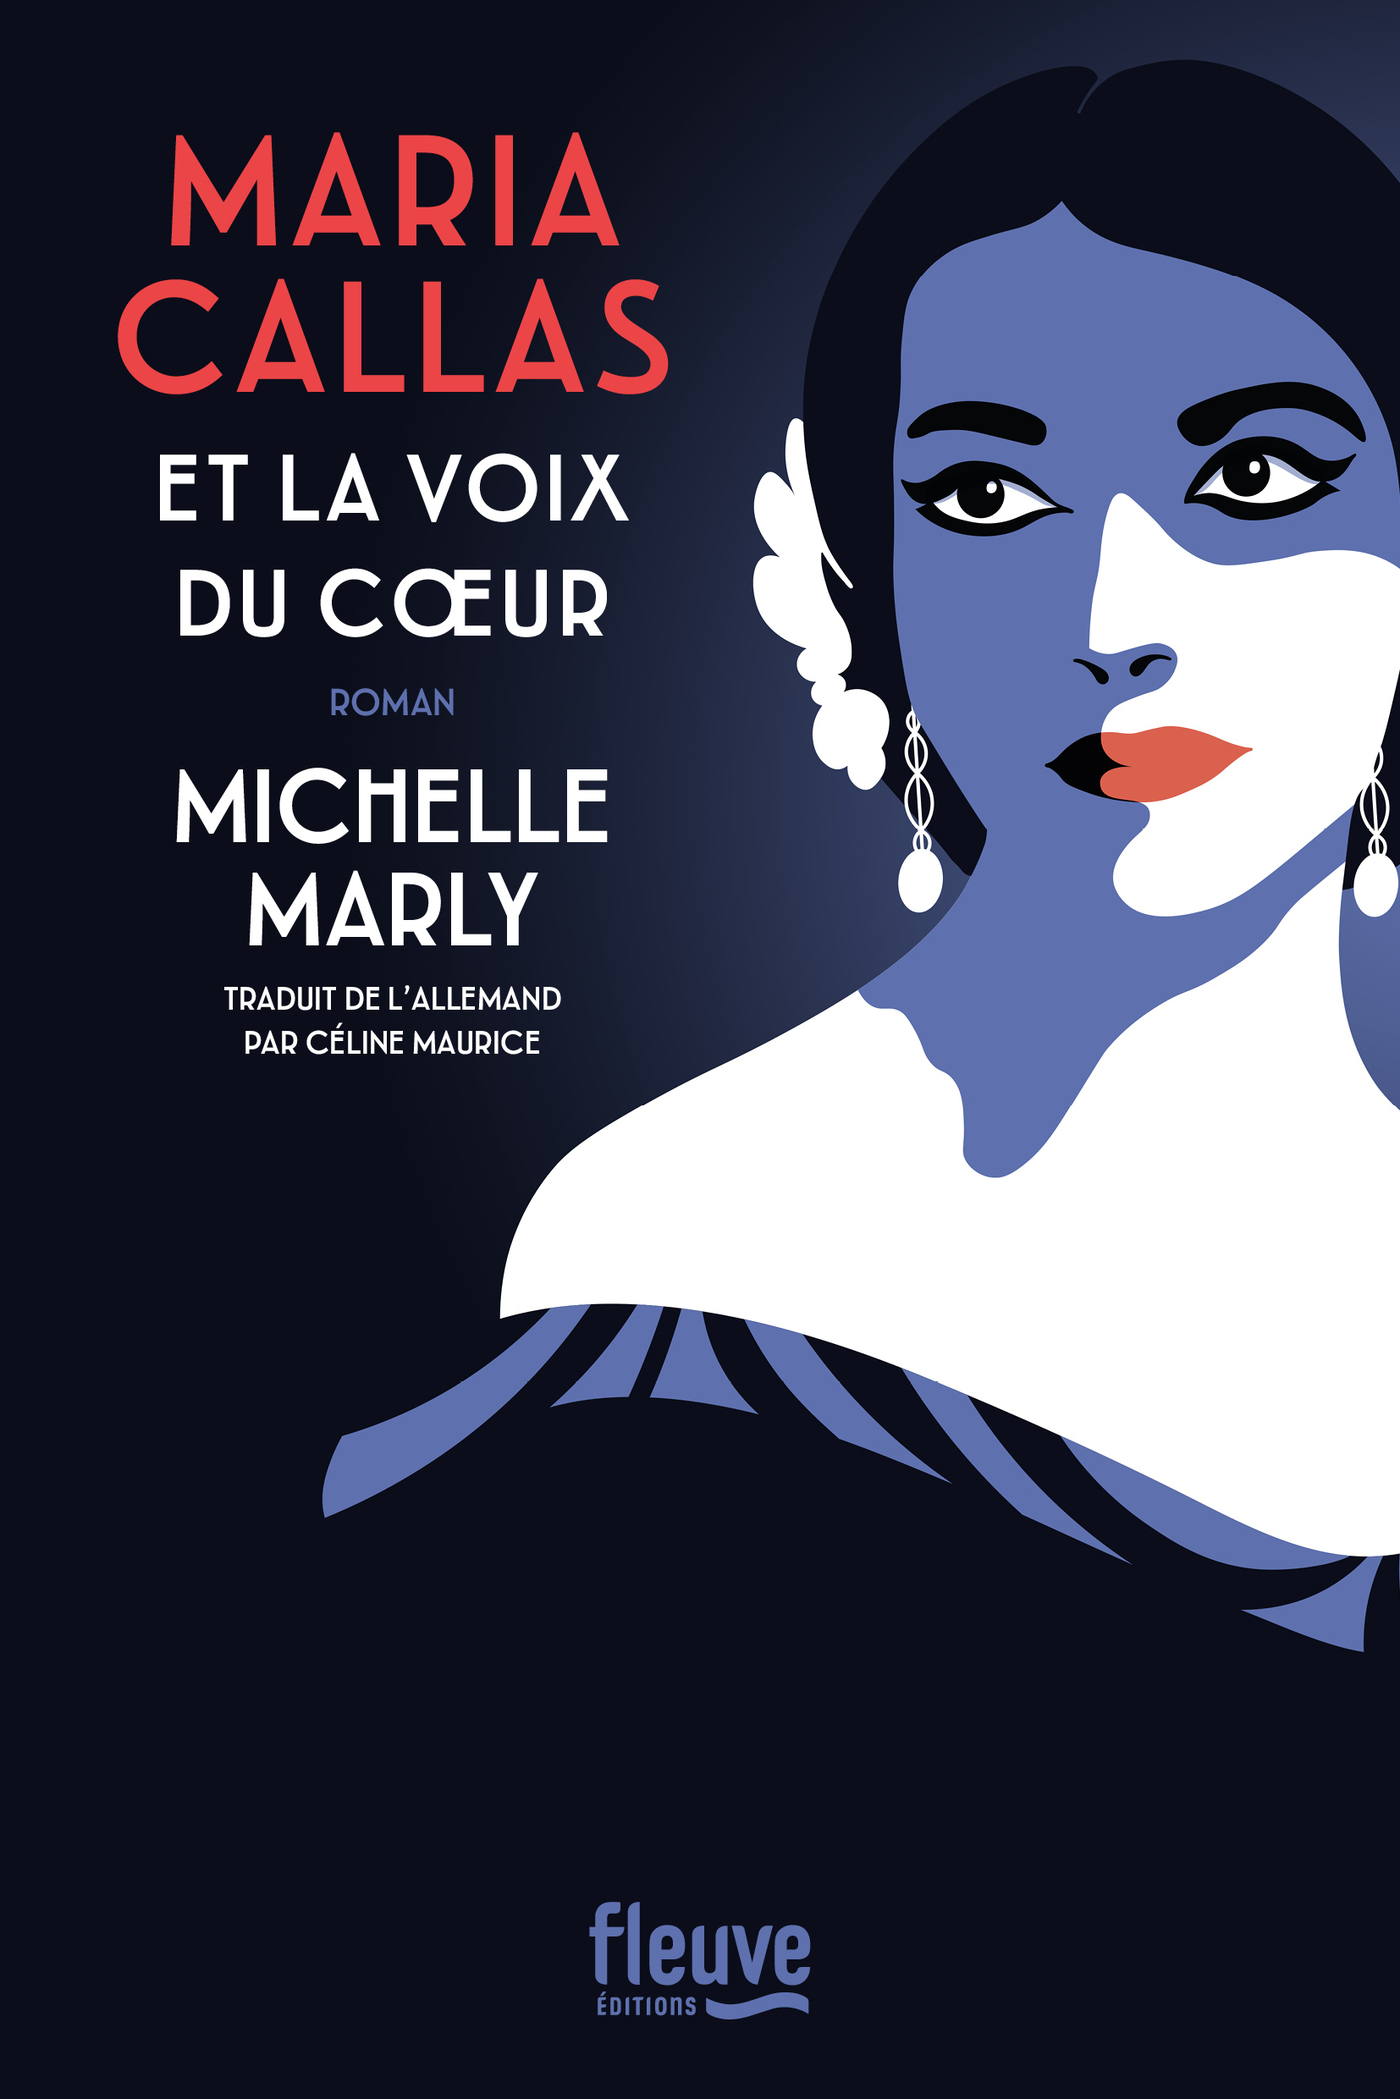 Afficher "Maria Callas et la voix du coeur"